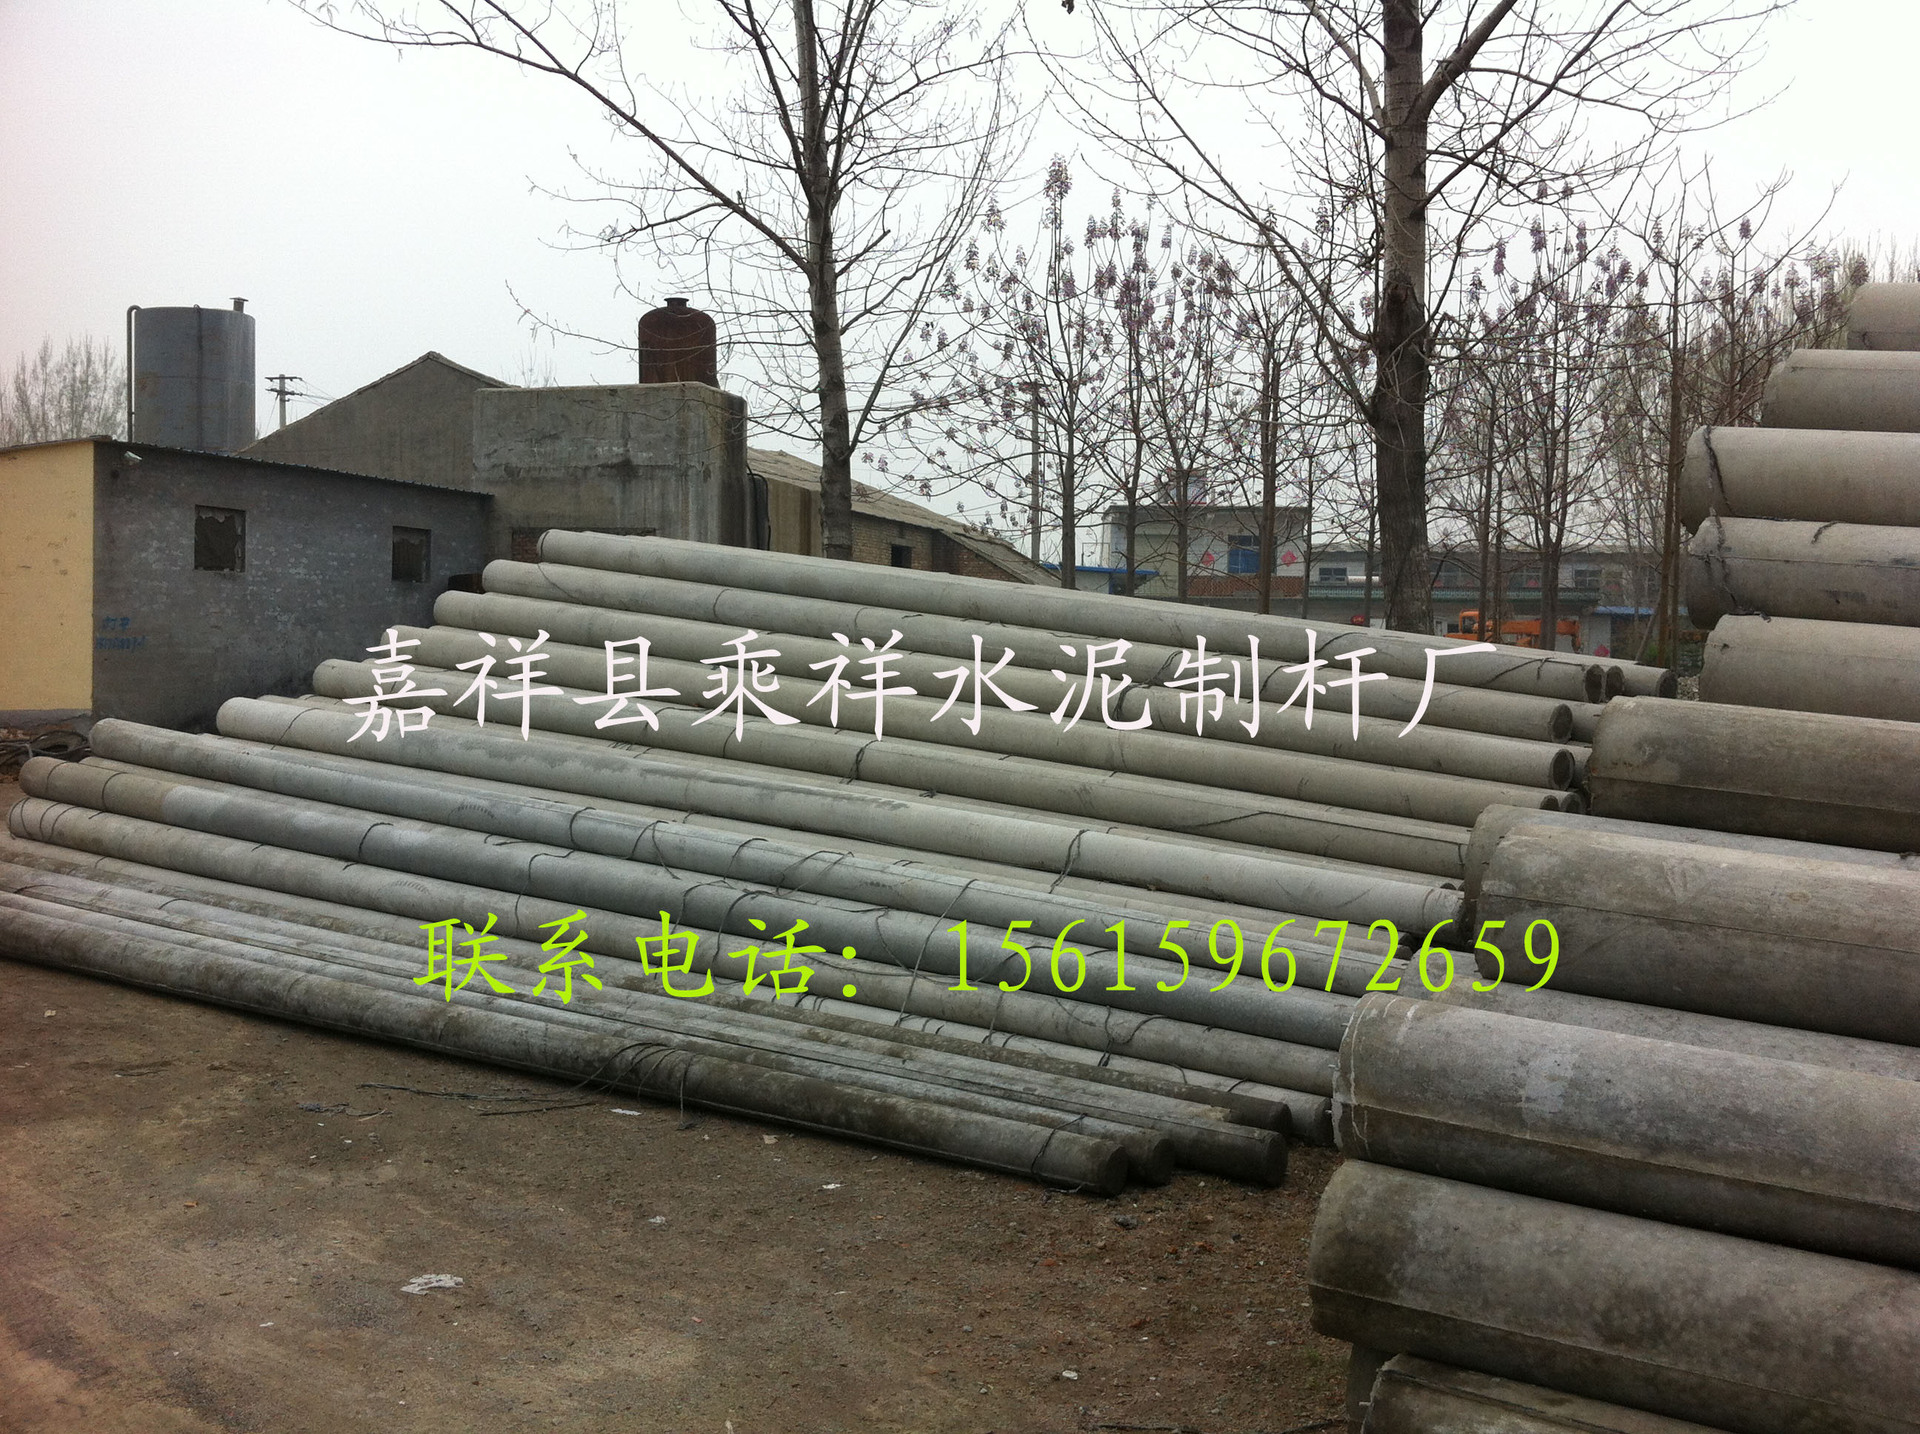 安徽省宿州市供应12米水泥杆 预应力水泥电杆 电杆厂家直销示例图25